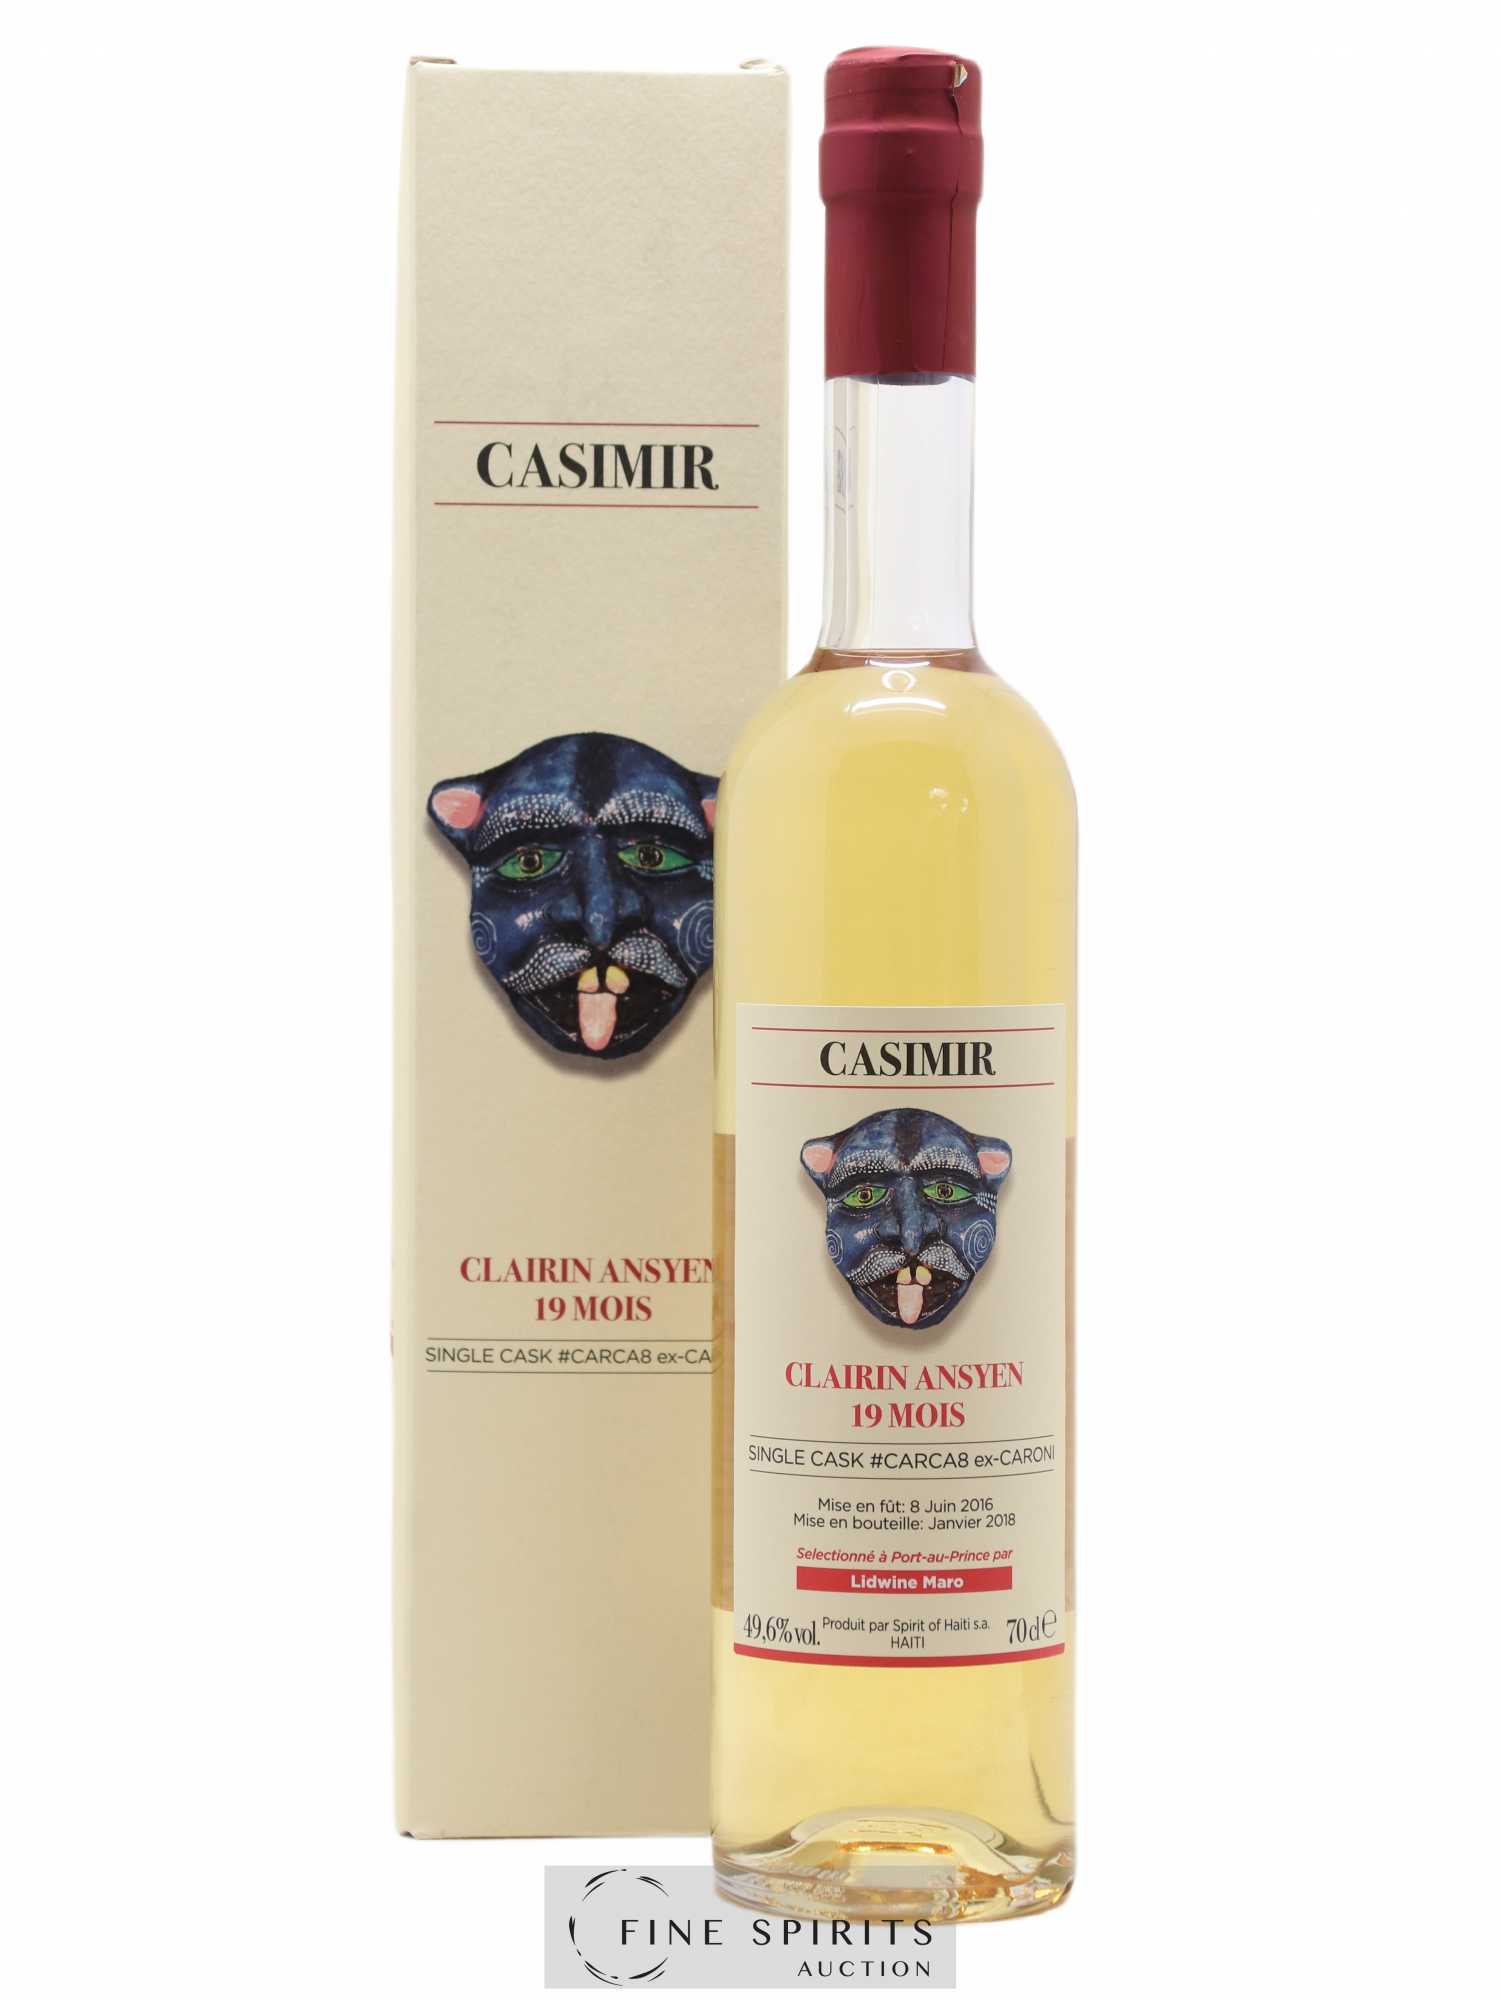 Casimir 2016 Velier 19 mois Cask n°CARCA8 ex-Caroni - bottled 2018 